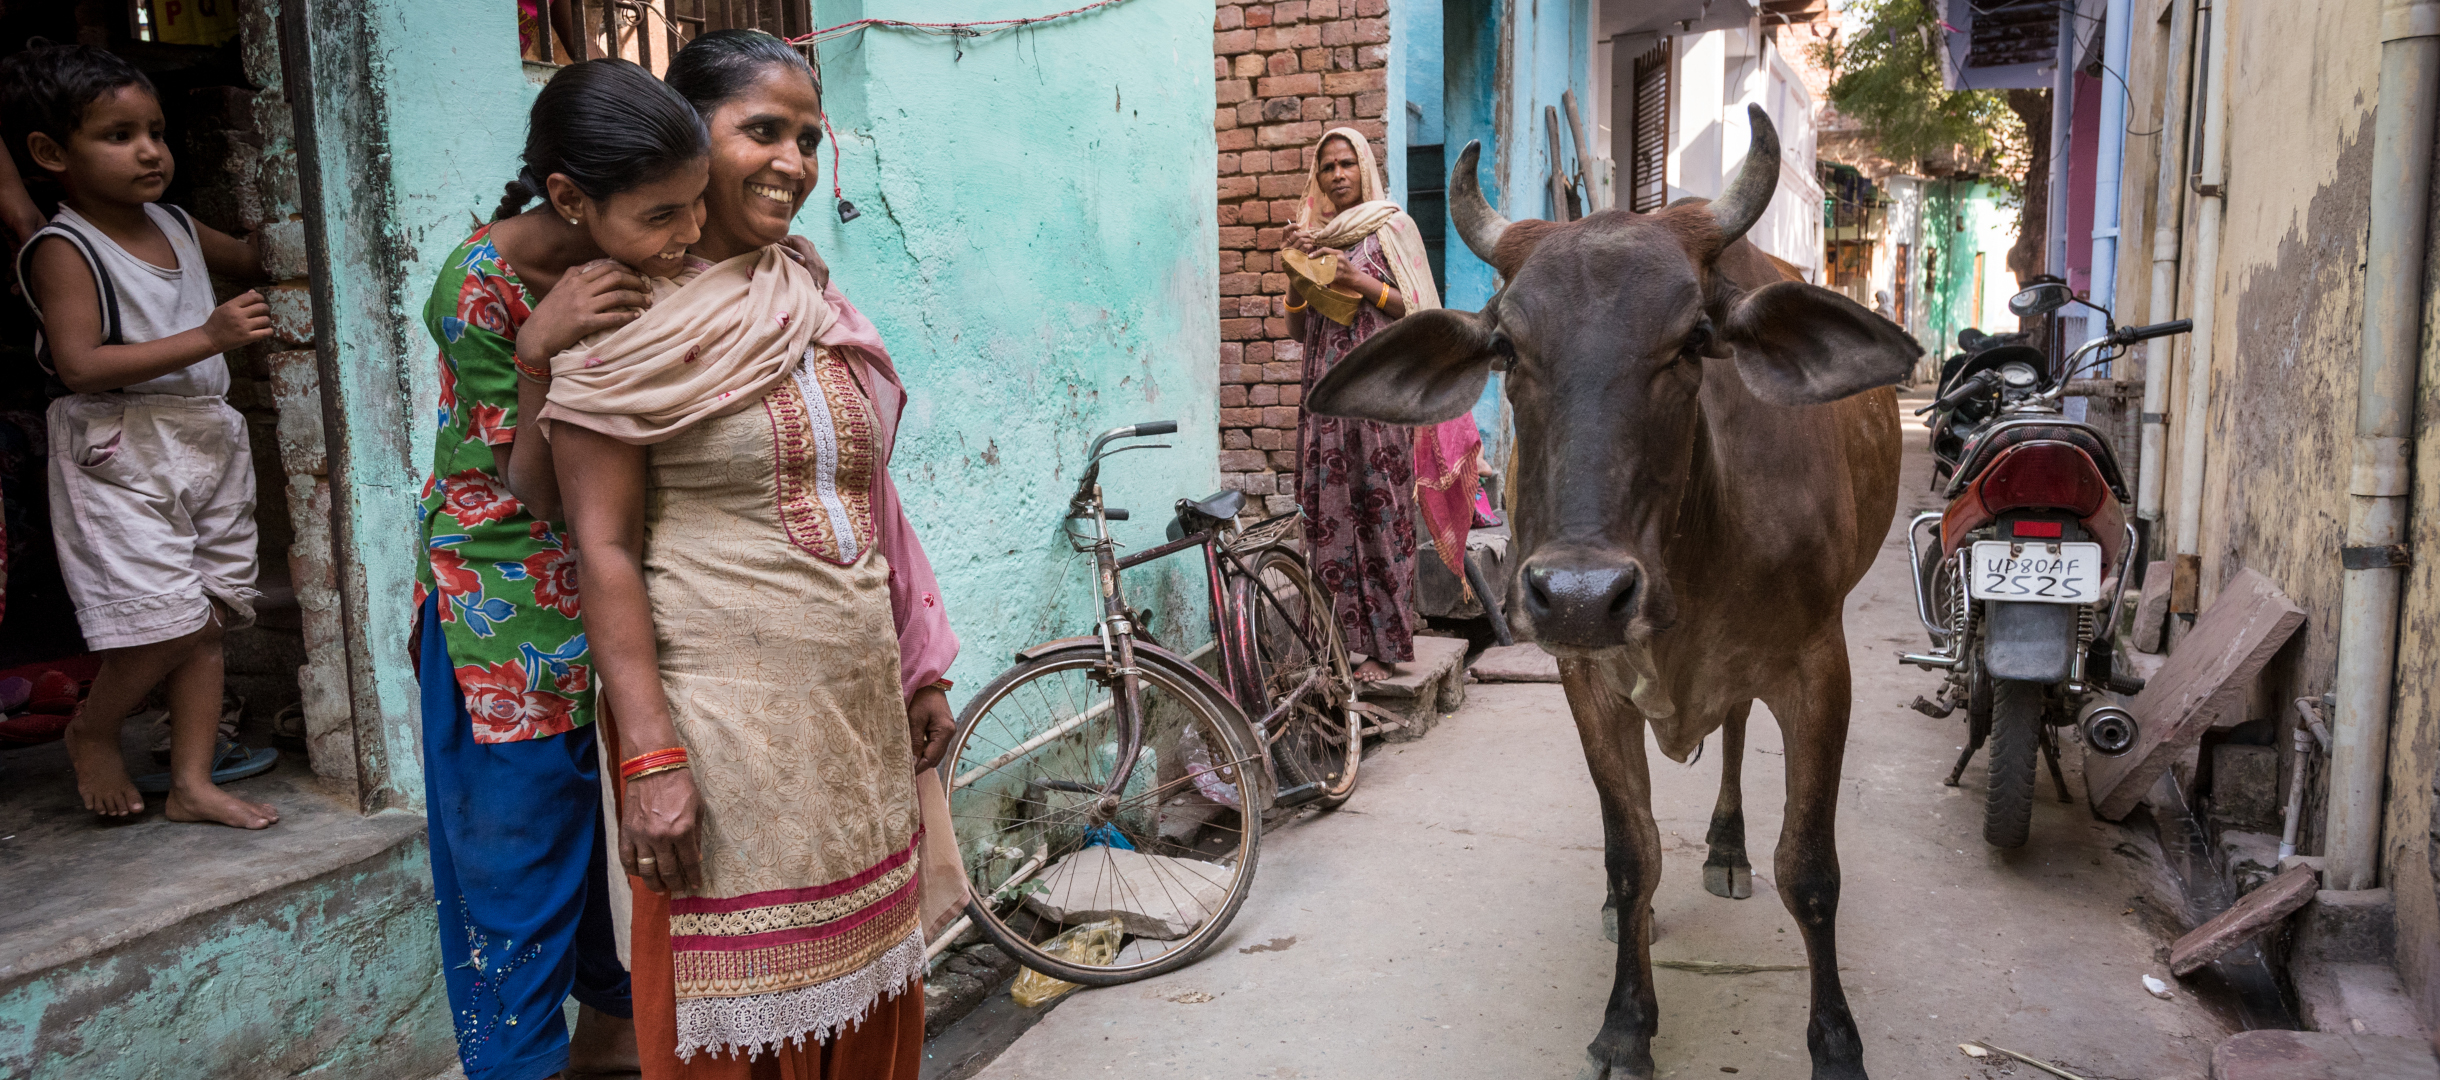 Straßenszene in der indischen Stadt Agra mit Kuh und Menschen